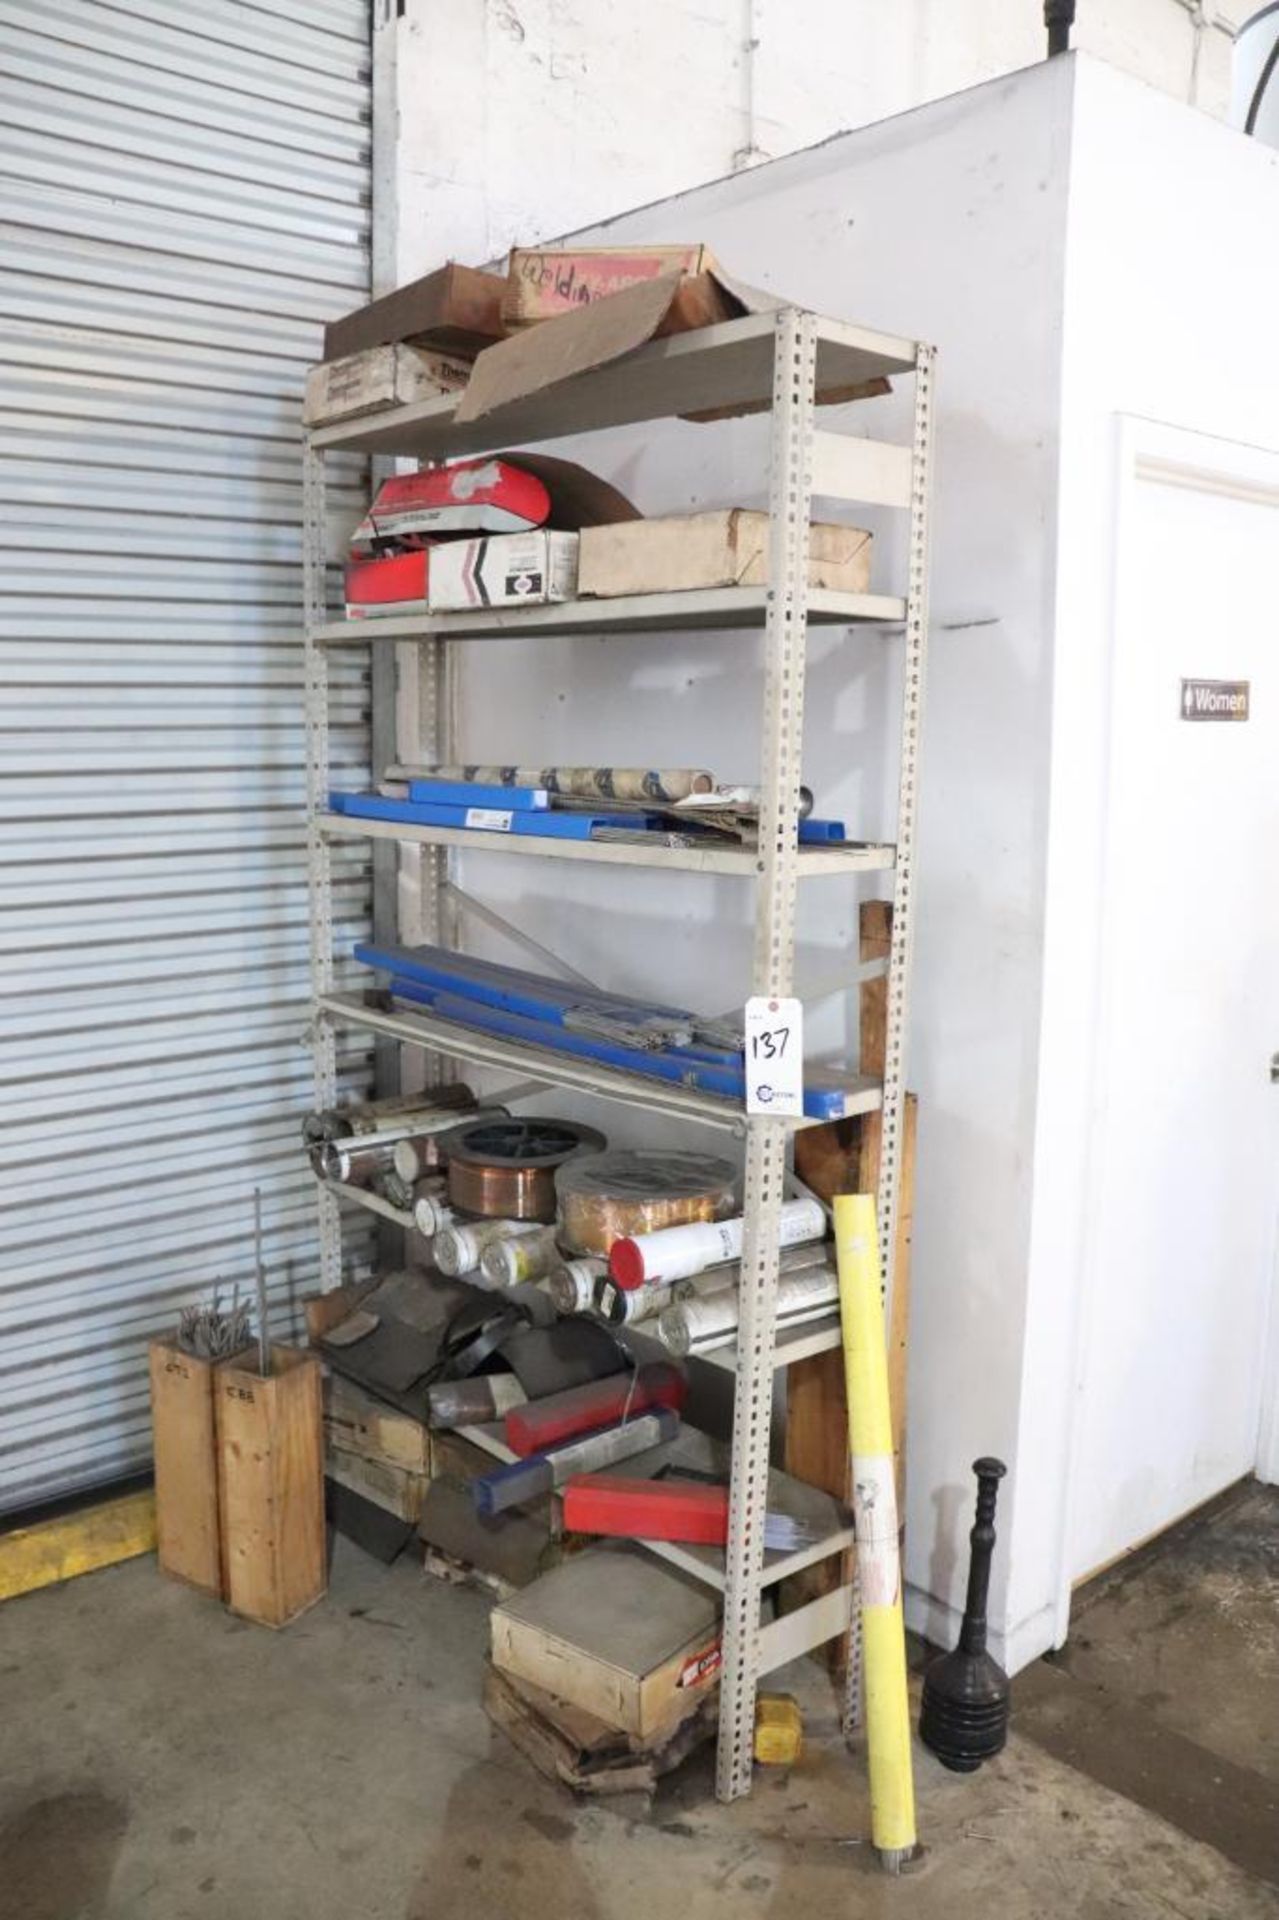 Shelf unit w/ welding rods & wire